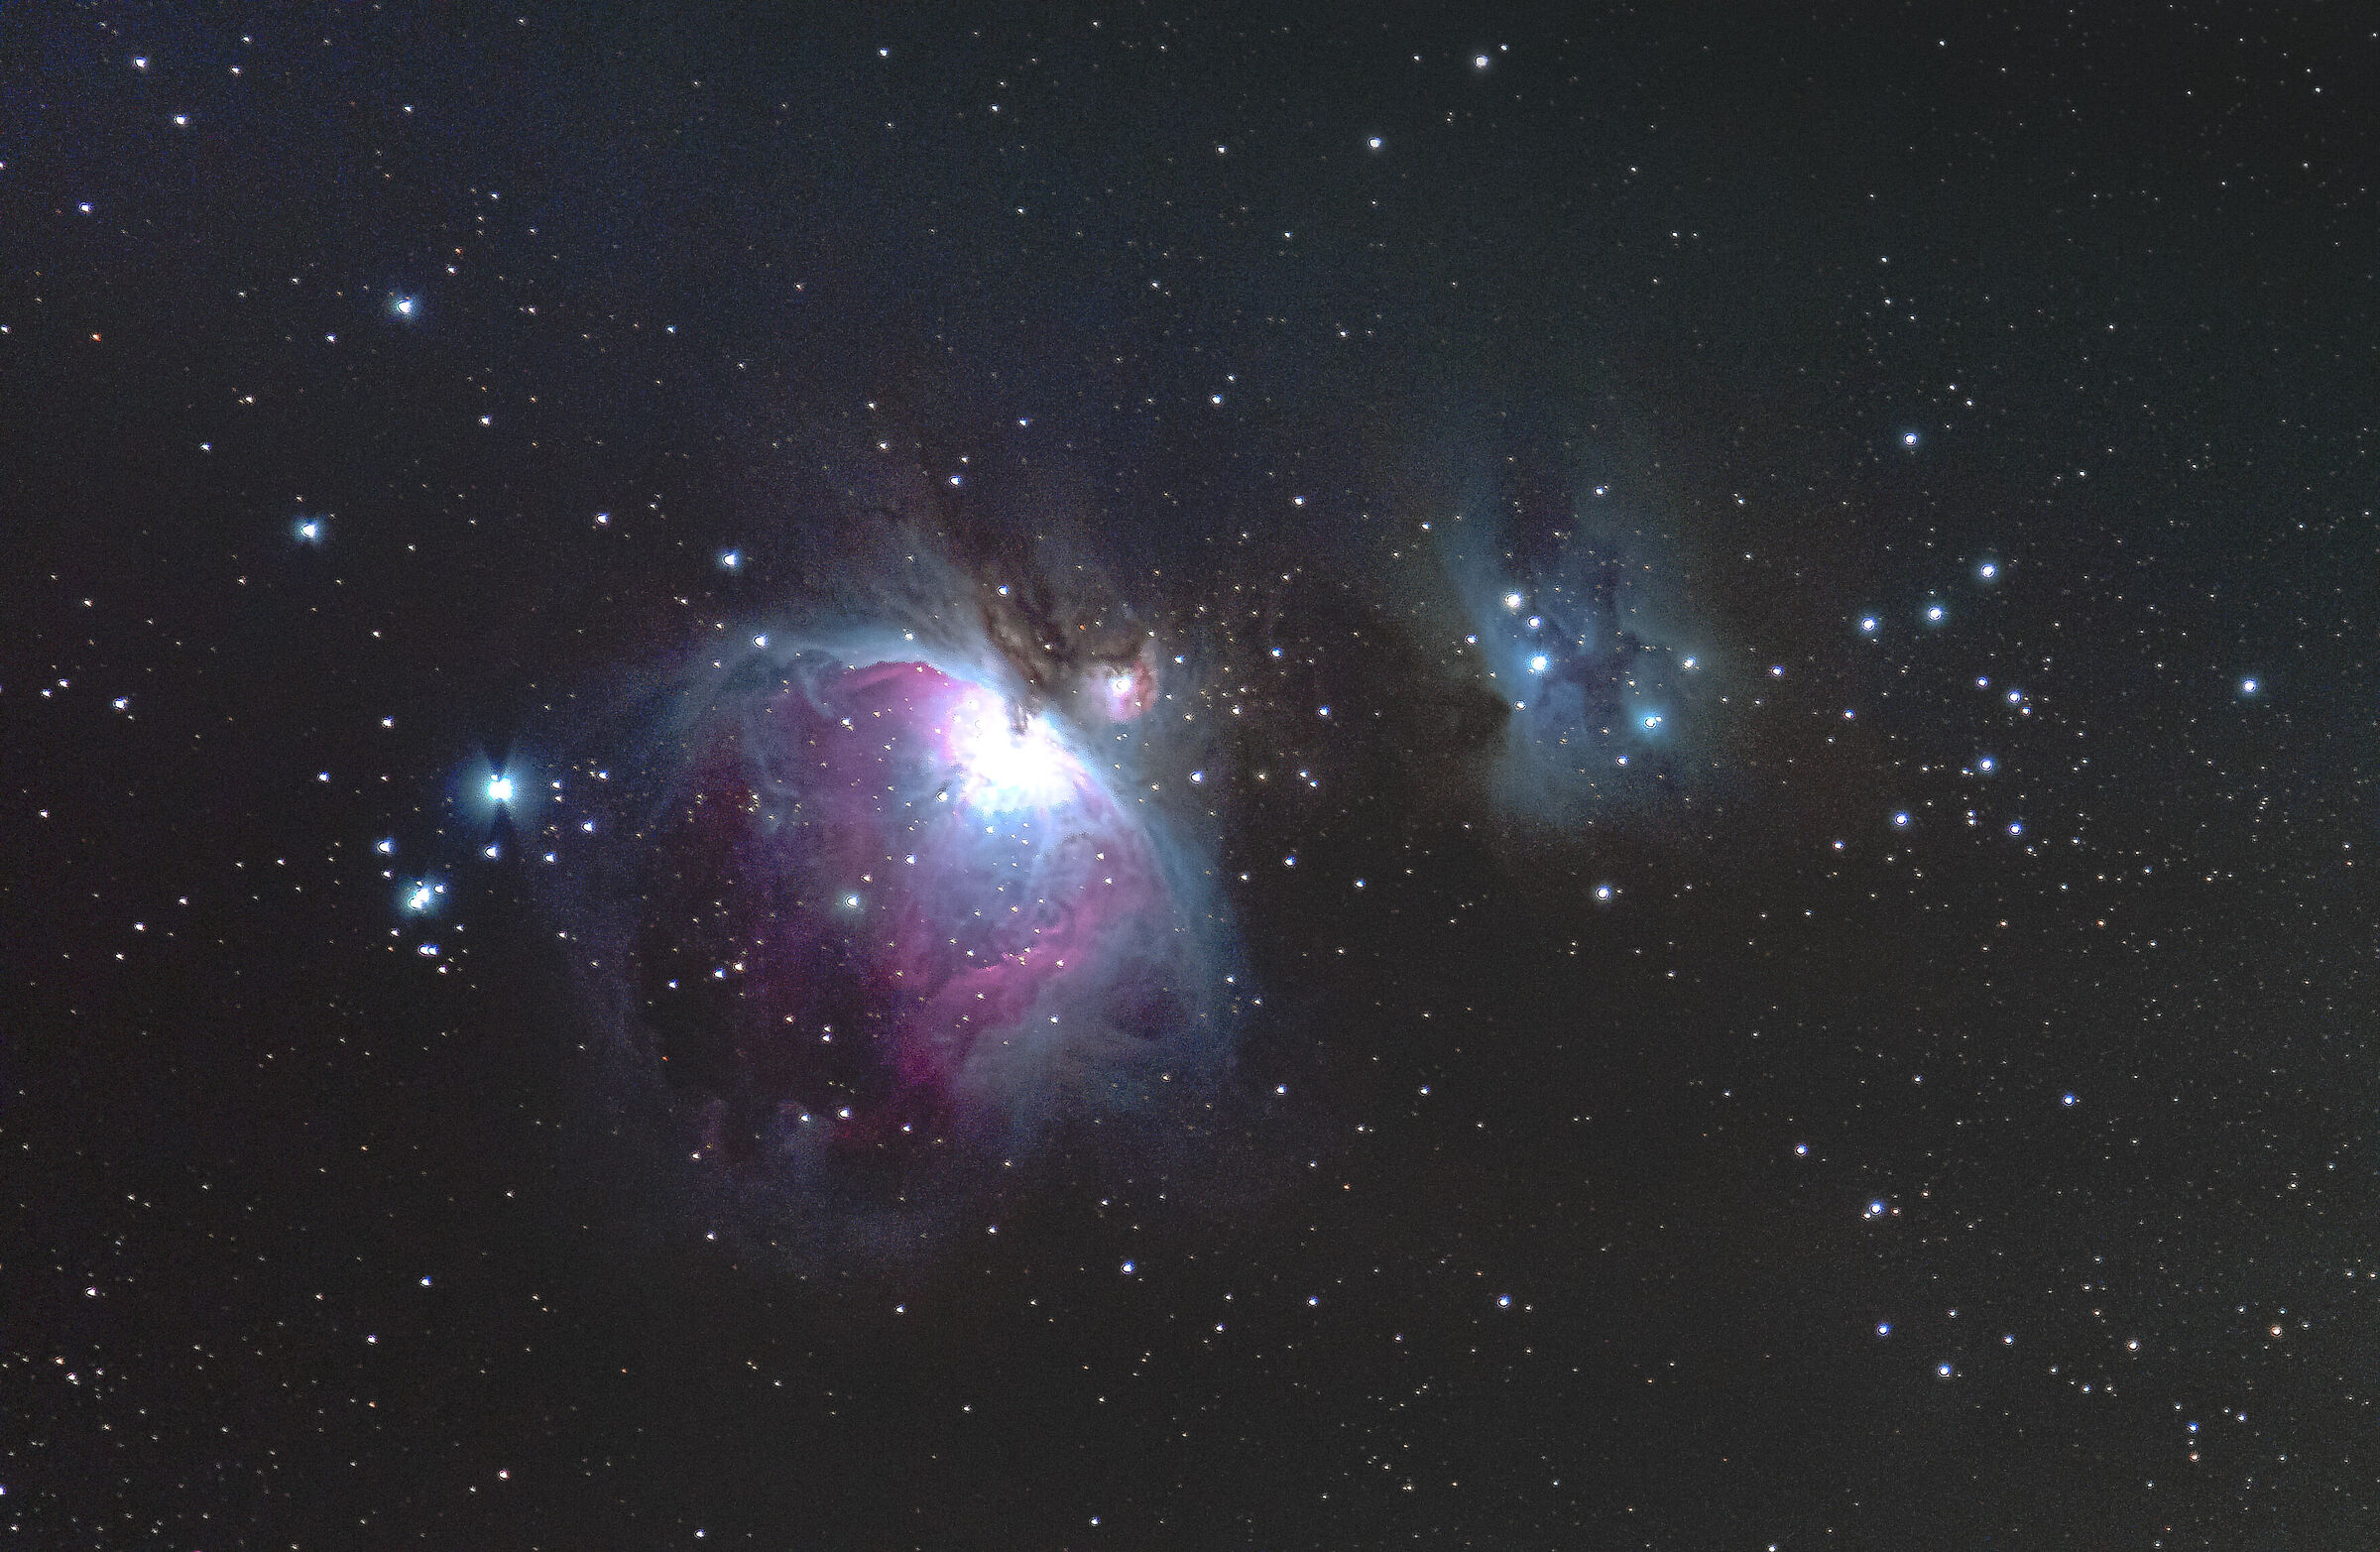 First test Orion Nebula...